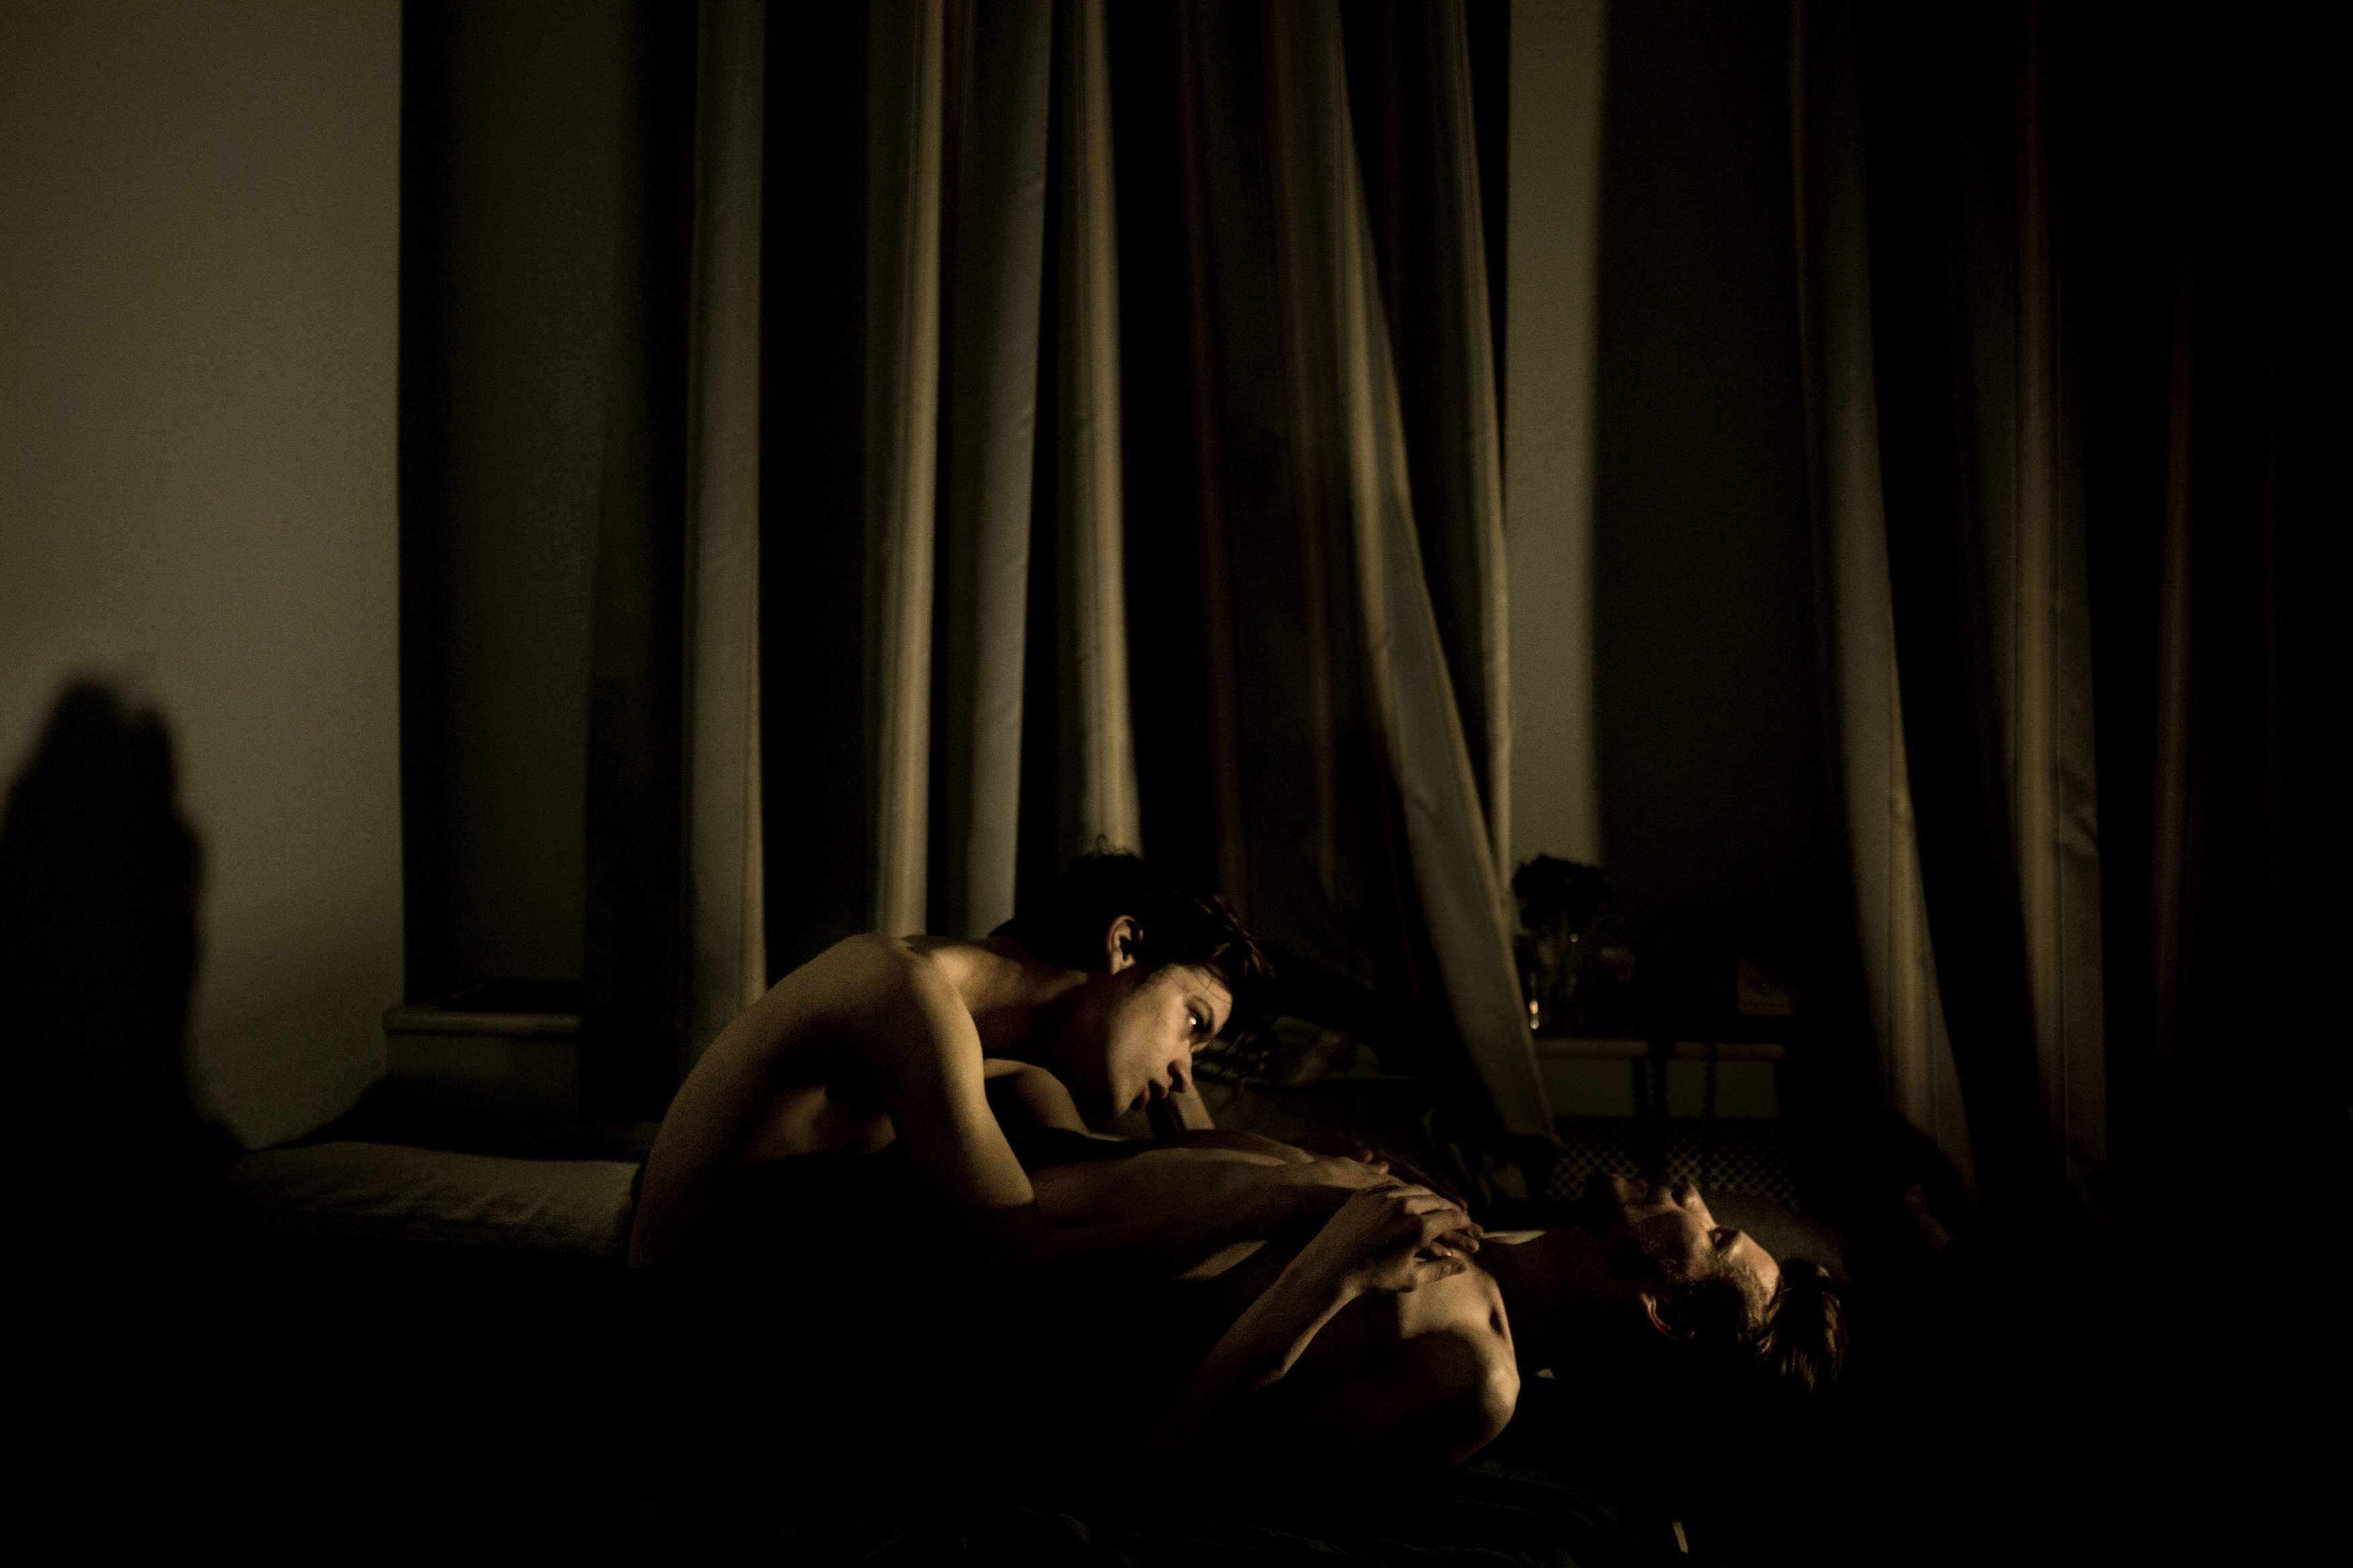 Una foto íntima de una pareja gay ganó el premio World Press Photo